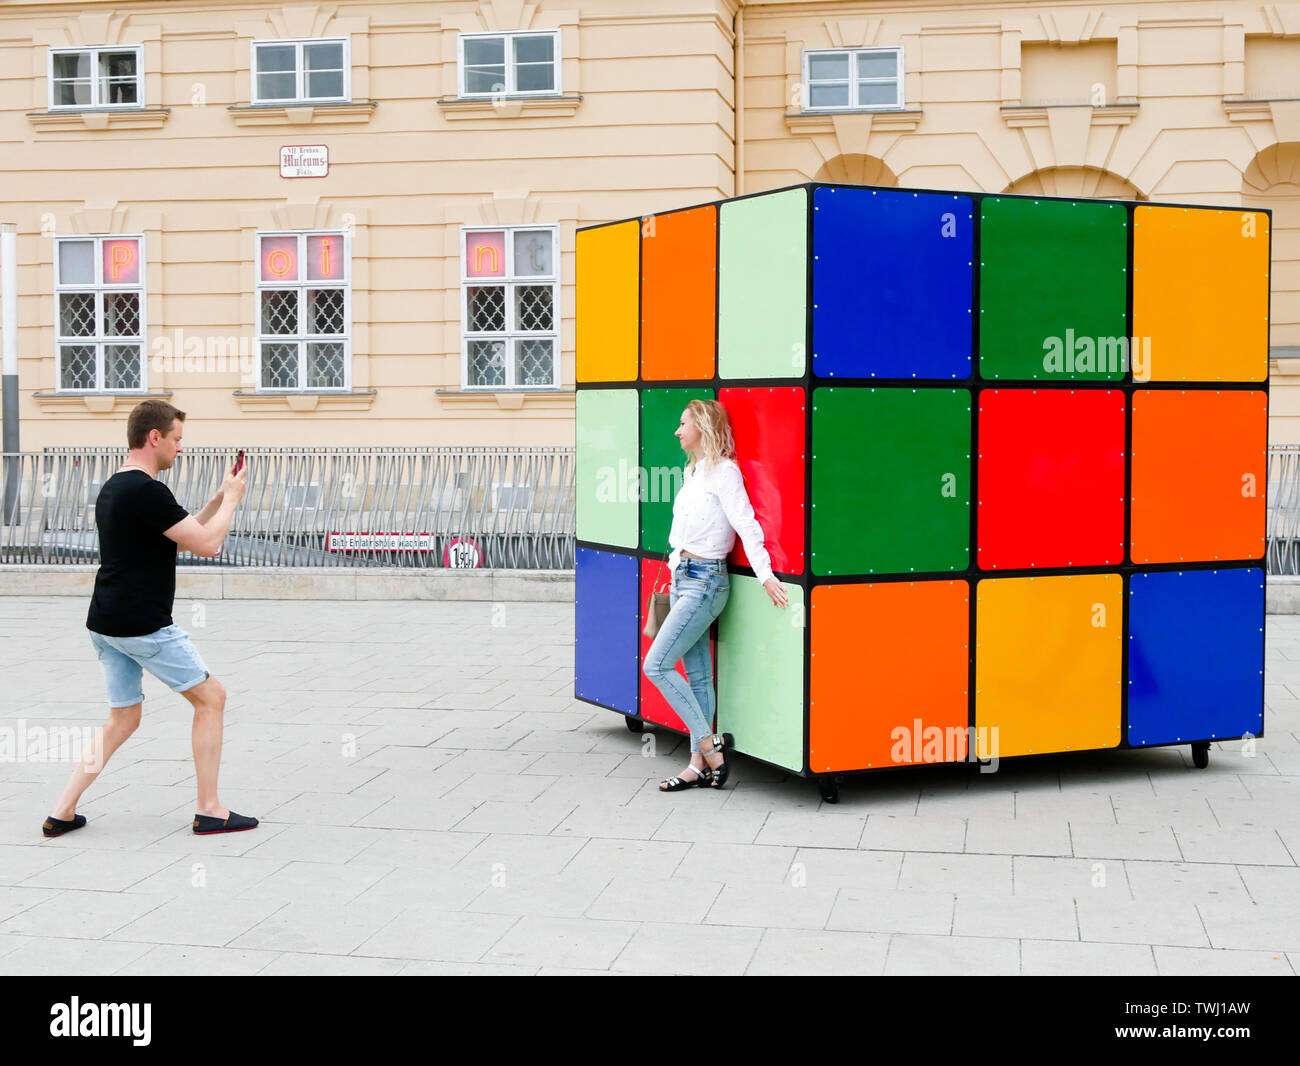 Un paio di scattare una foto di una scultura del cubo di Rubik nel quartiere dei musei di Vienna Austria durante la celebrazione di europride 2019 Foto Stock